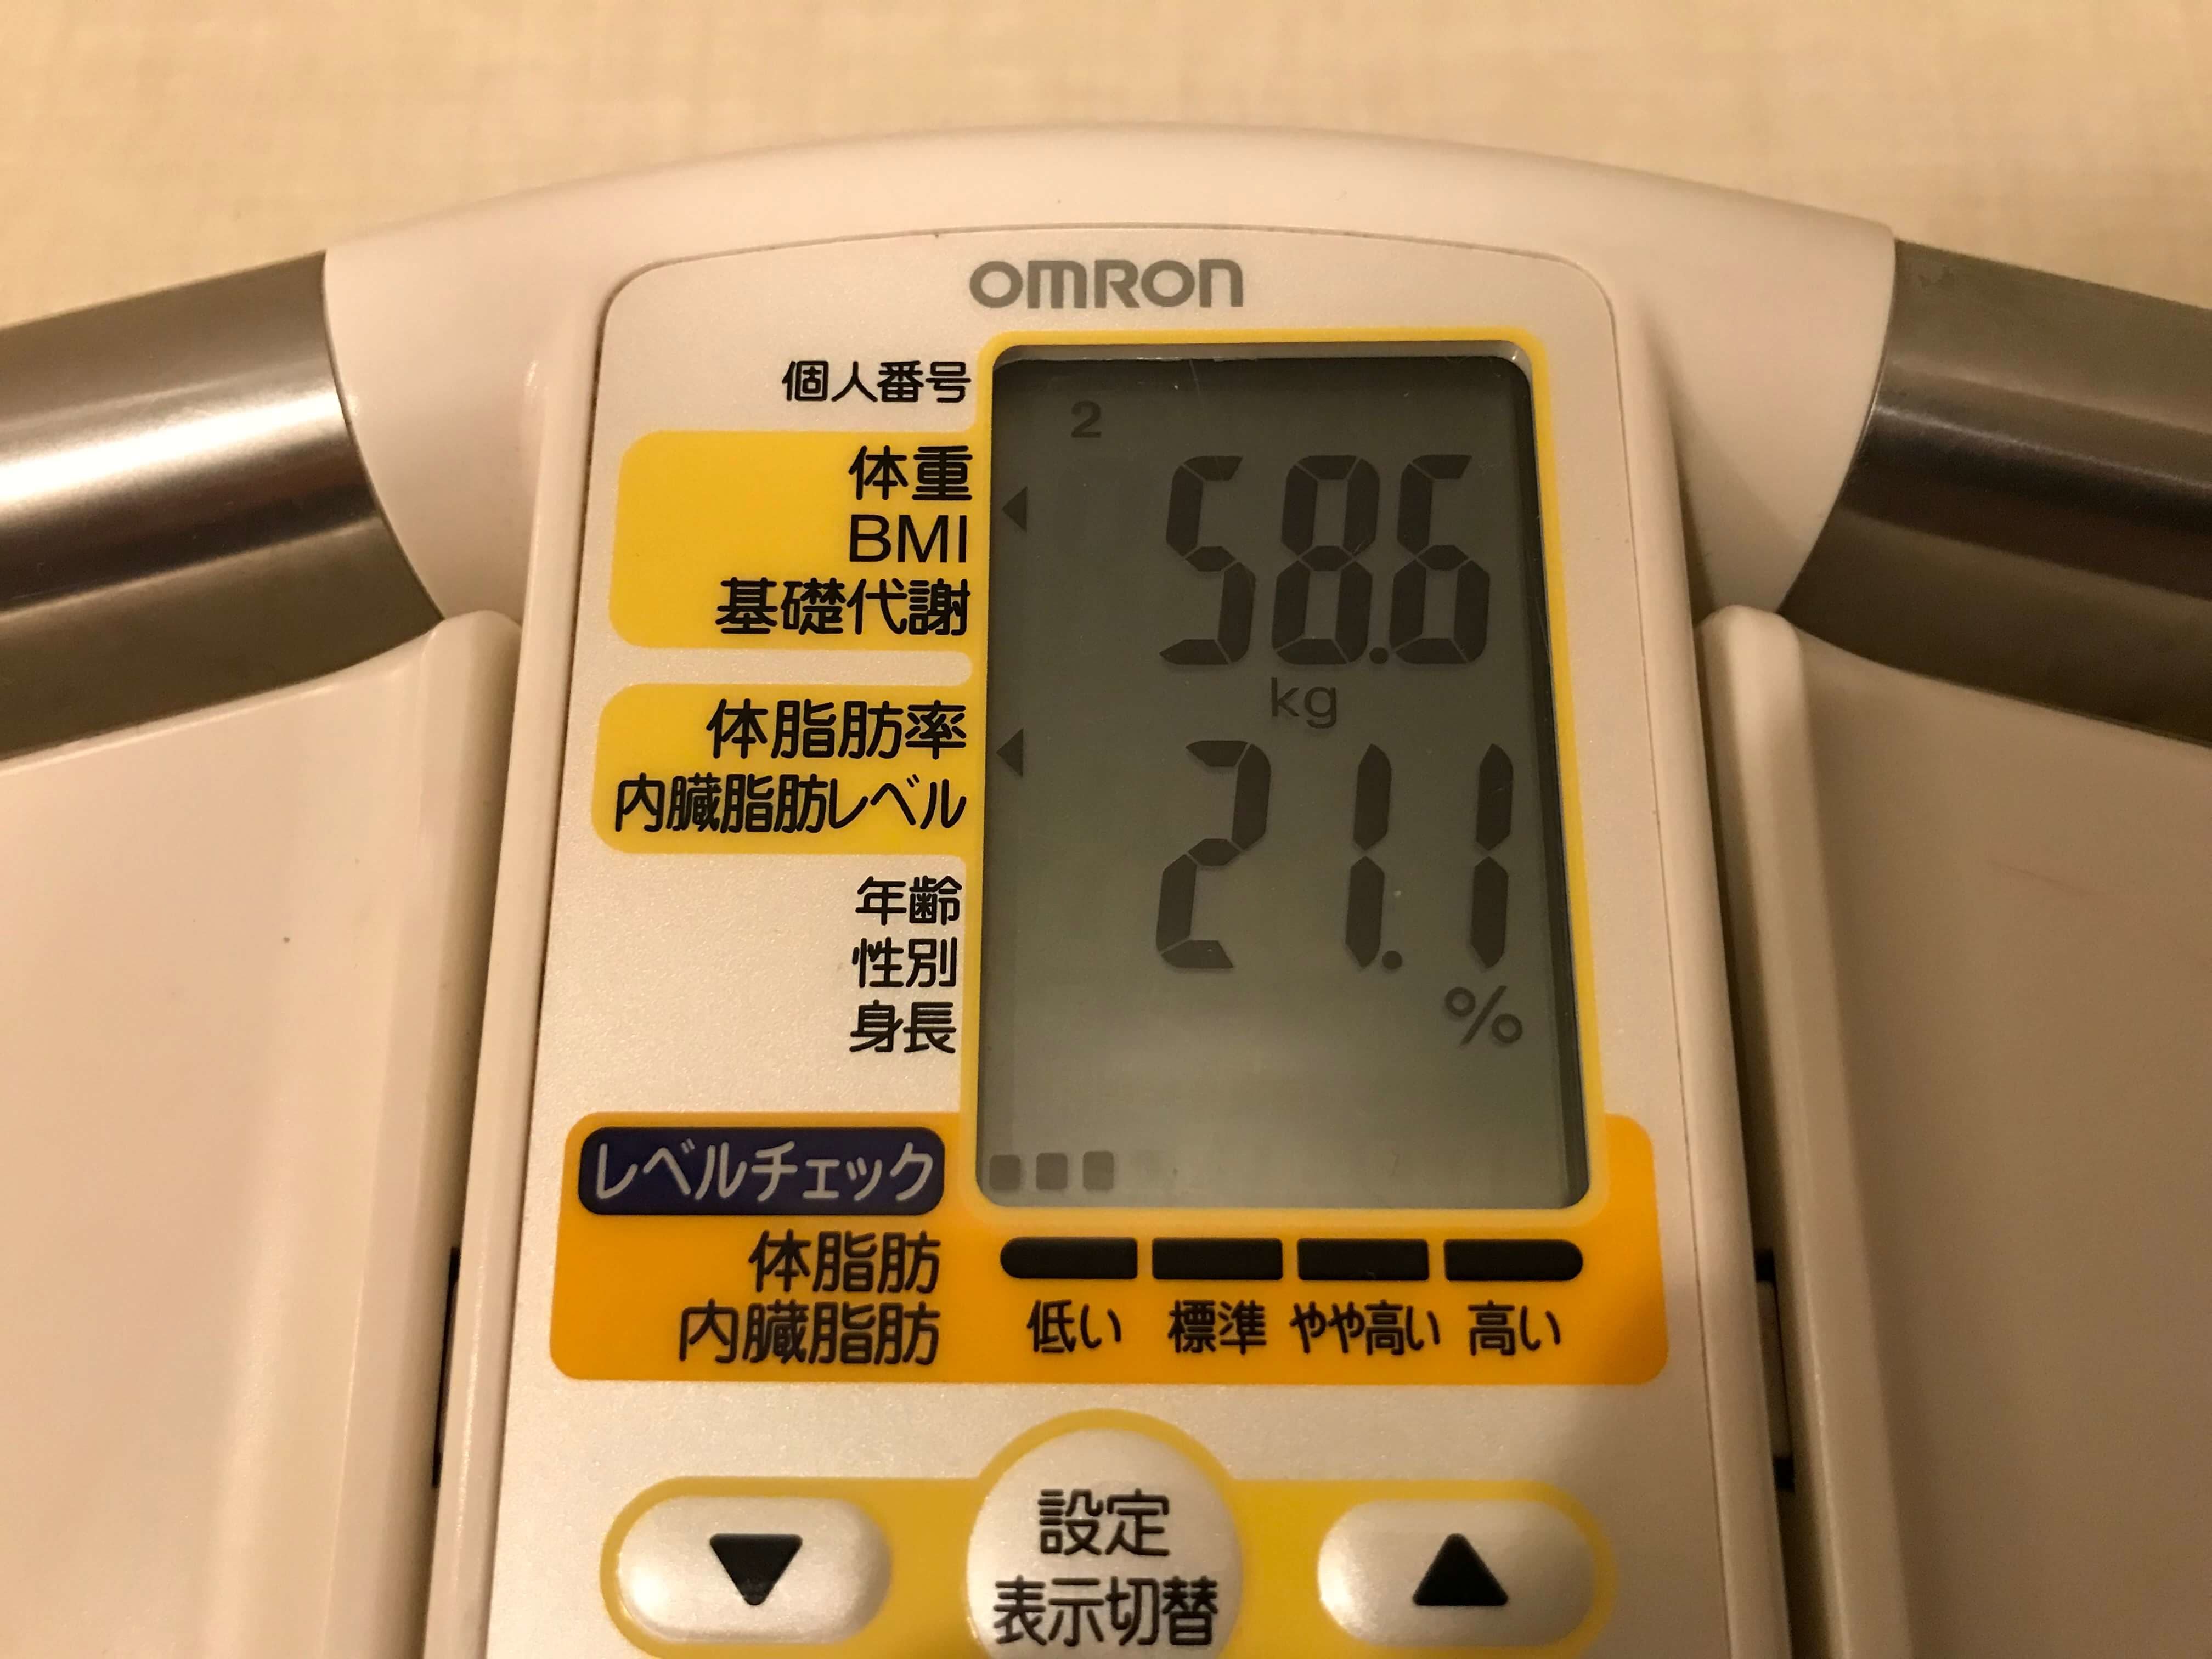 2019/10/1〜2019/10/15 体重経過と運動の記録詳細